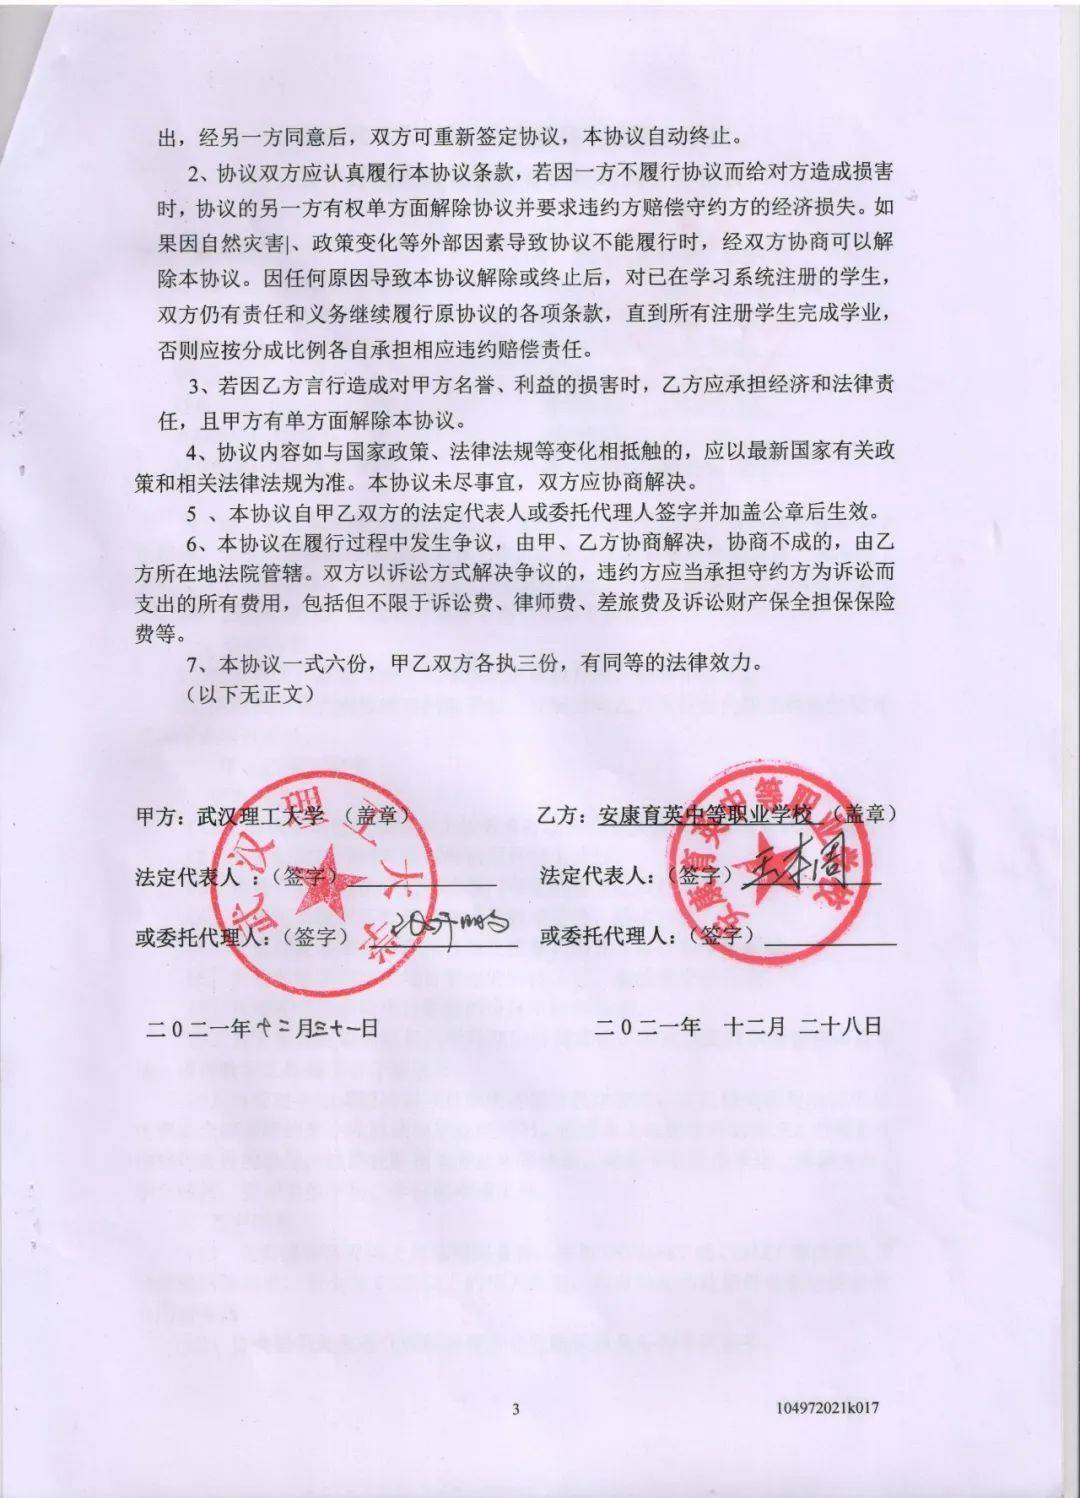 安康市人民政府与武汉理工大学签订战略合作协议中人才培养与输送工作